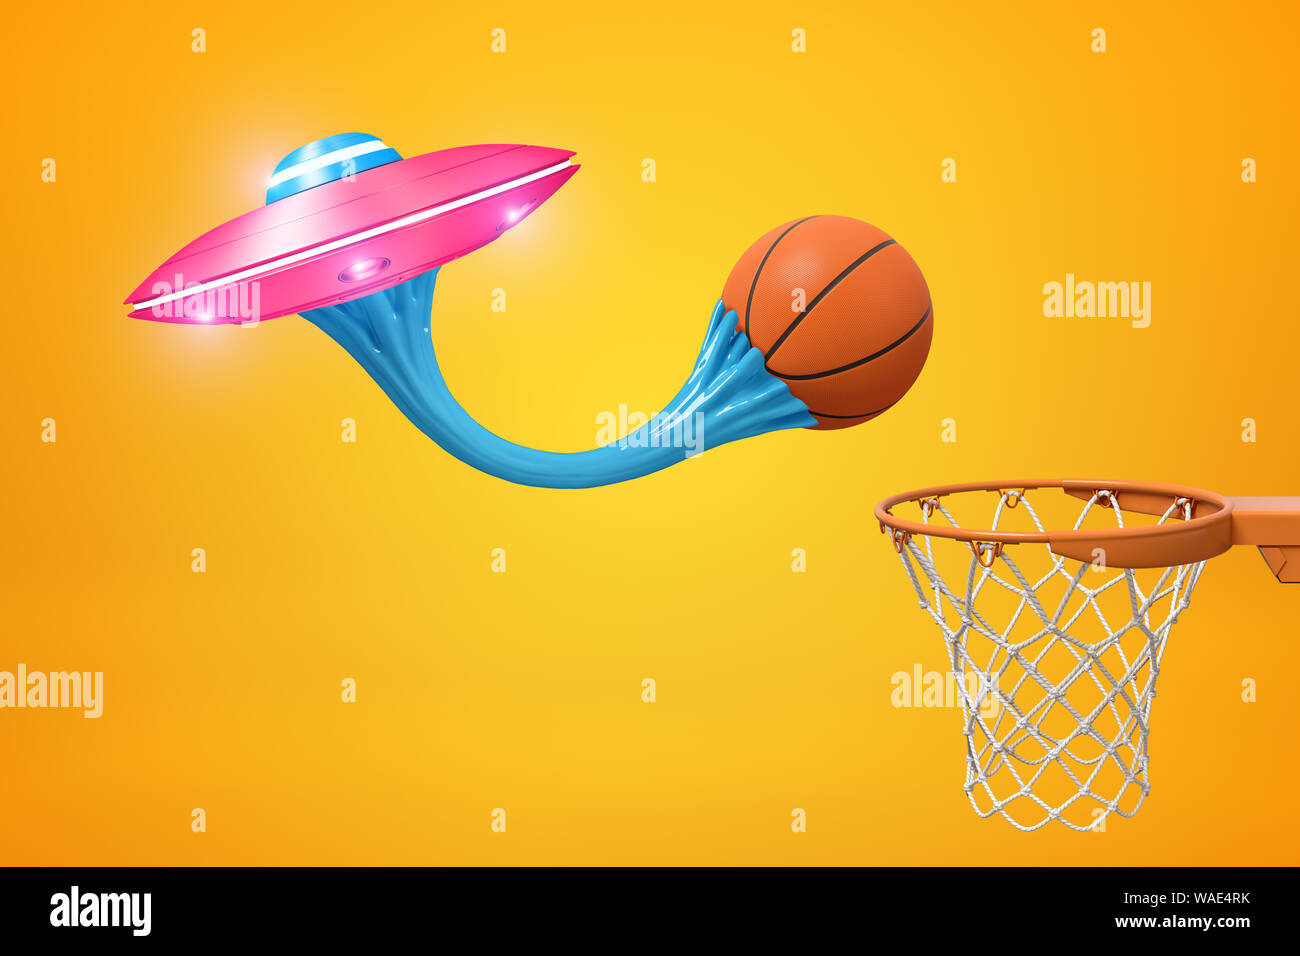 3D-Rendering von Basketball Ball rosa Metall UFO mit blauen klebrigen  Kaugummi und Basketballkorb auf gelbem Hintergrund geklebt. Digitale Kunst  Science Fiction. G Stockfotografie - Alamy